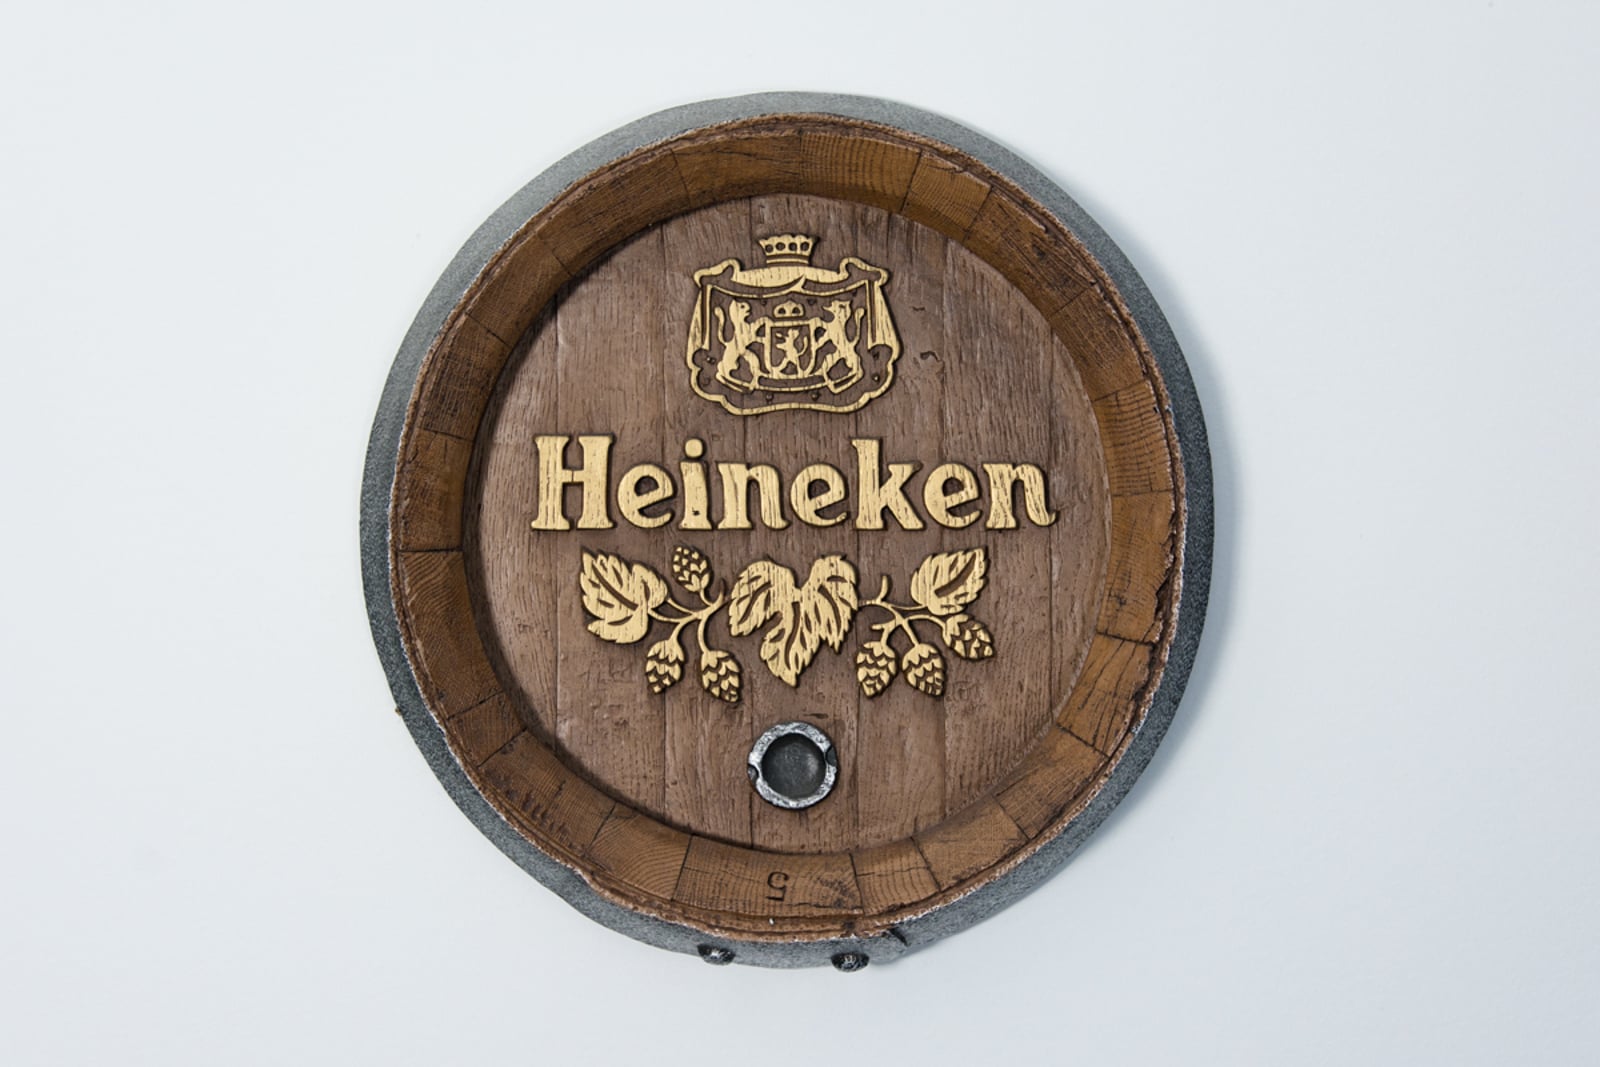 Heineken Barrel Top